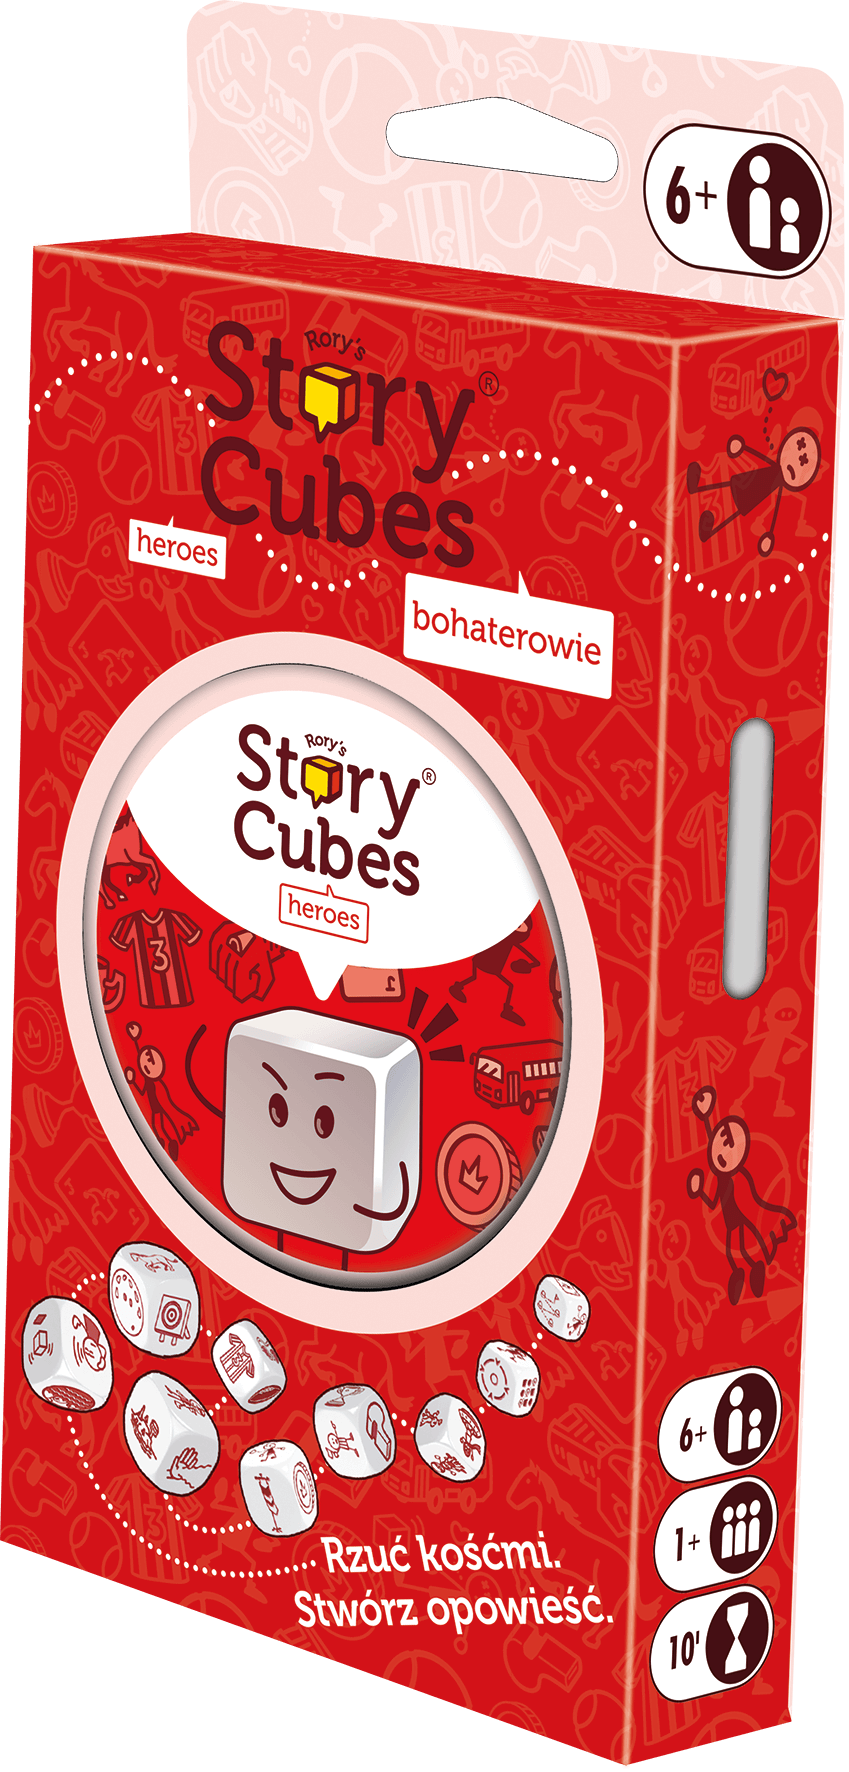 Story Cubes: Bohaterowie (nowa edycja)